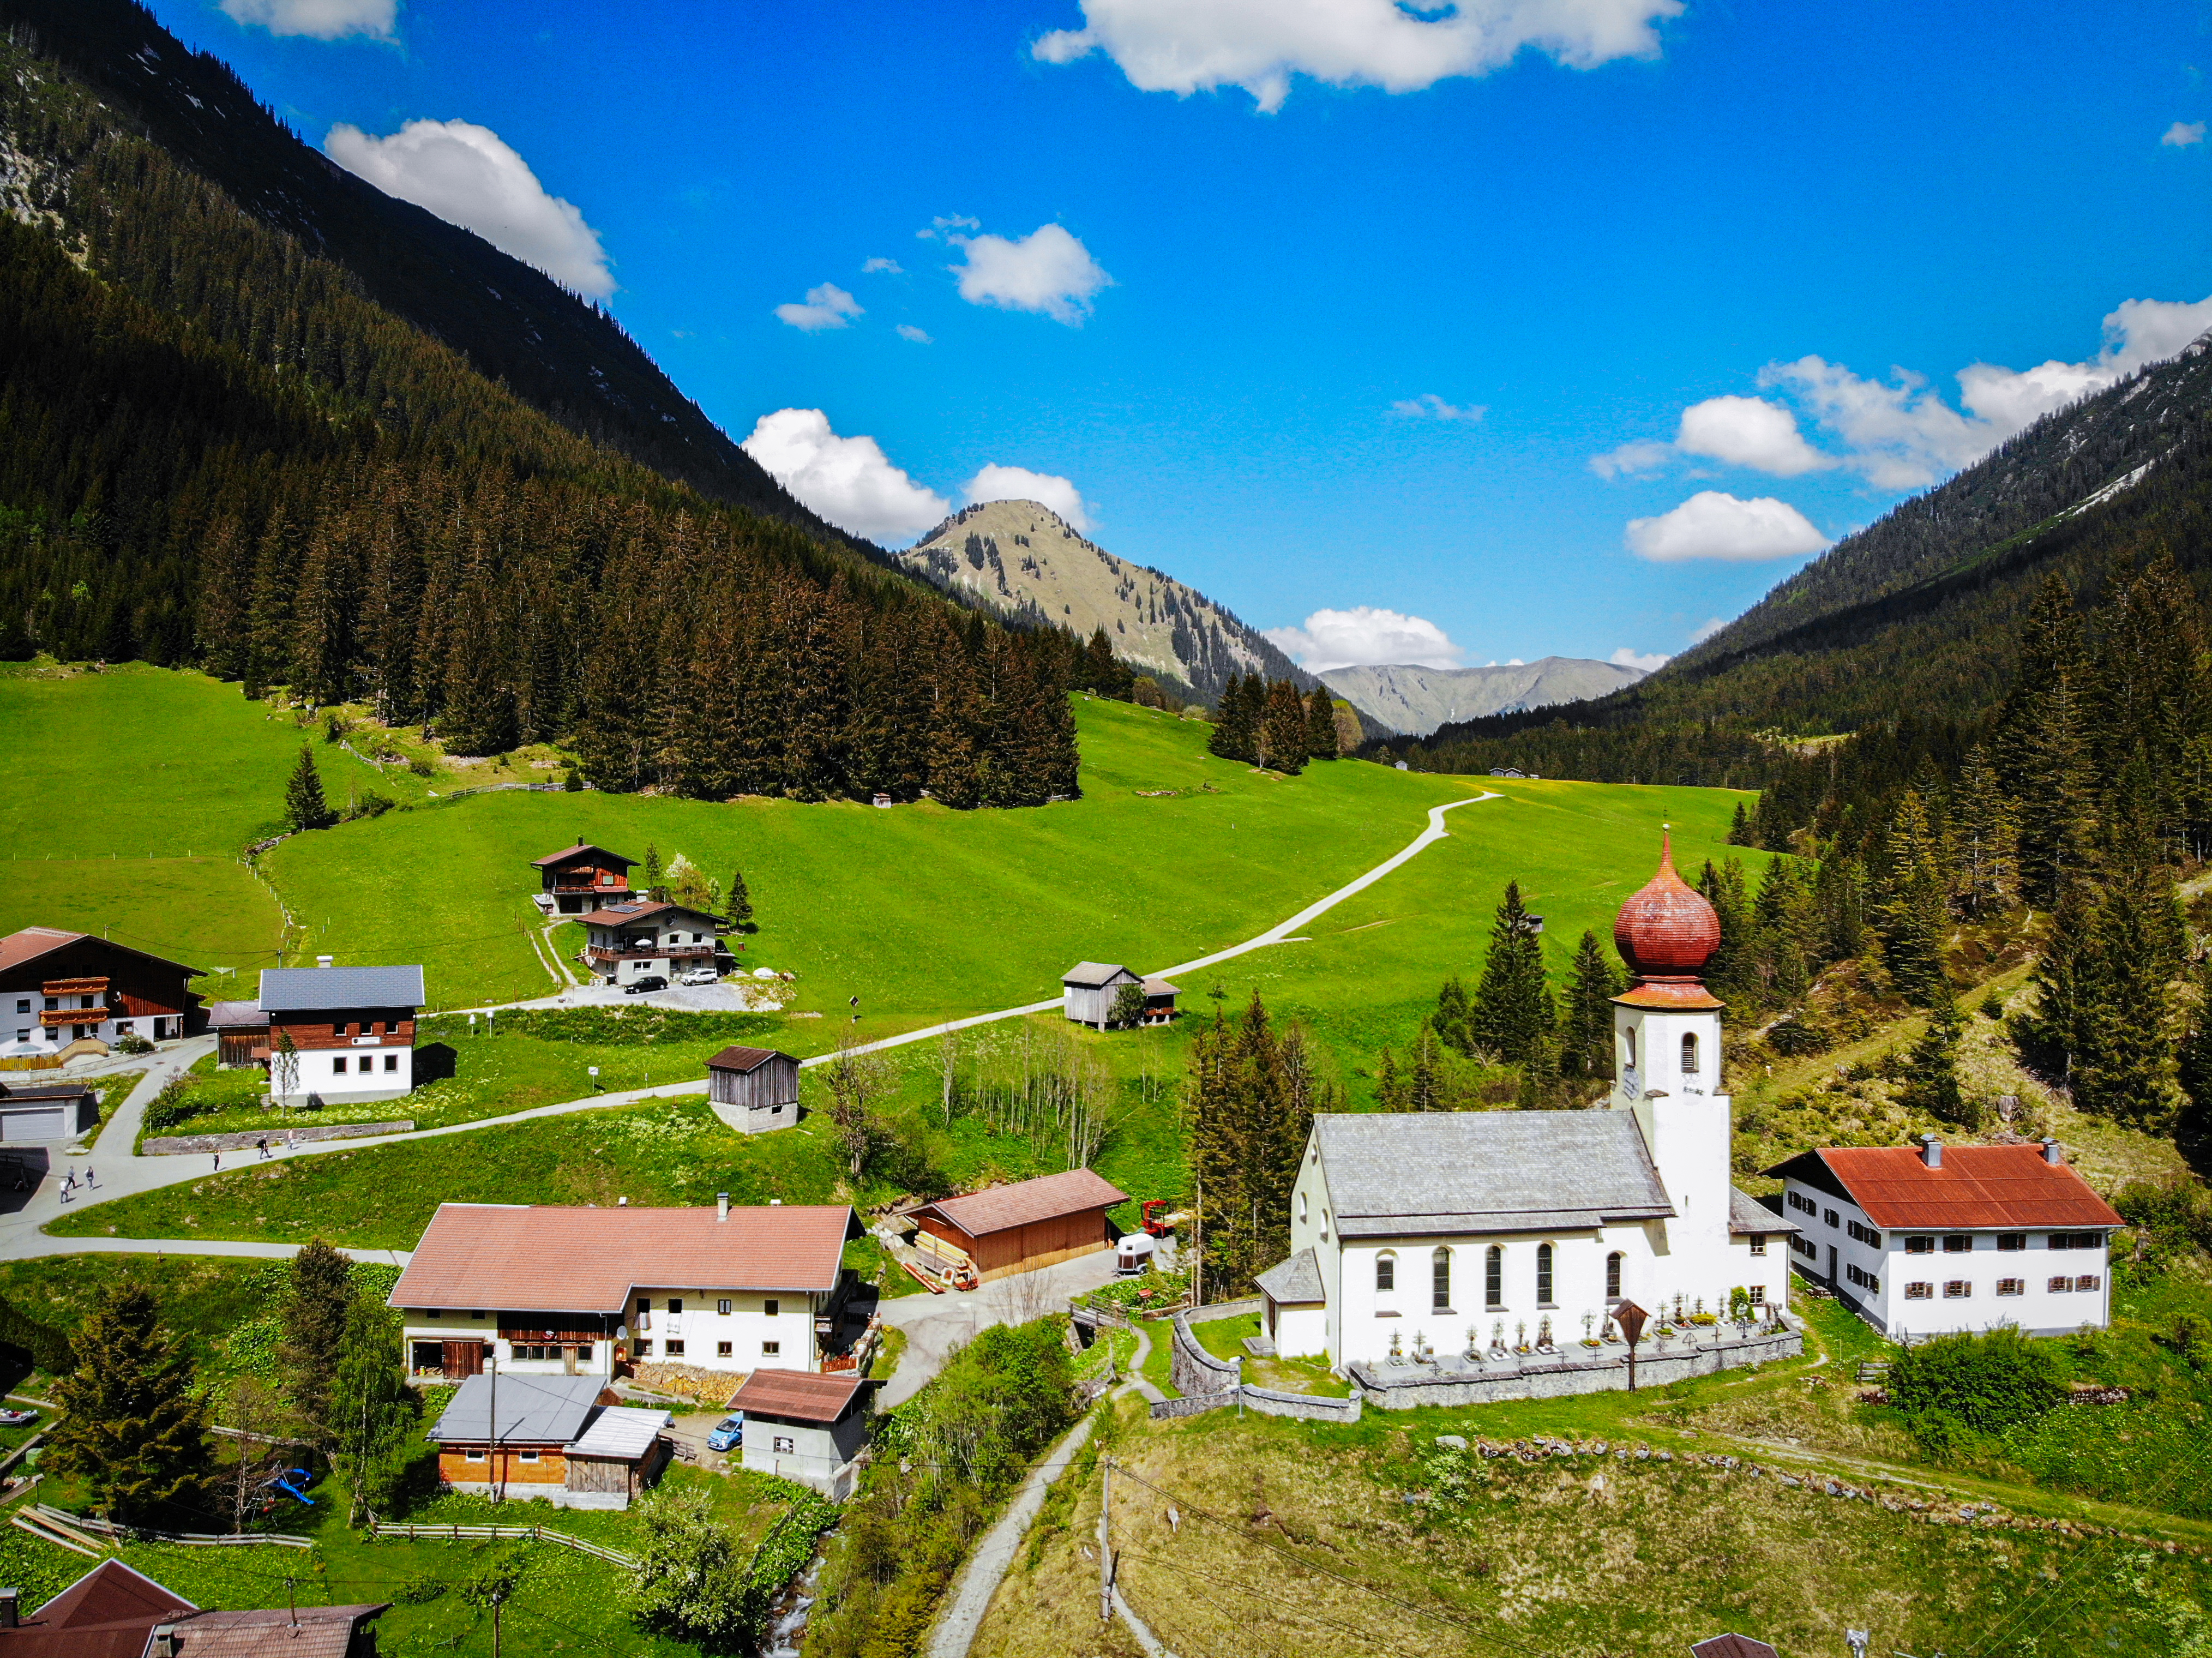 <p>Petit et pittoresque : le village de Namlos (soit "sans nom") à 1 225 mètres d'altitude dans les Alpes de Lechtal.</p>
